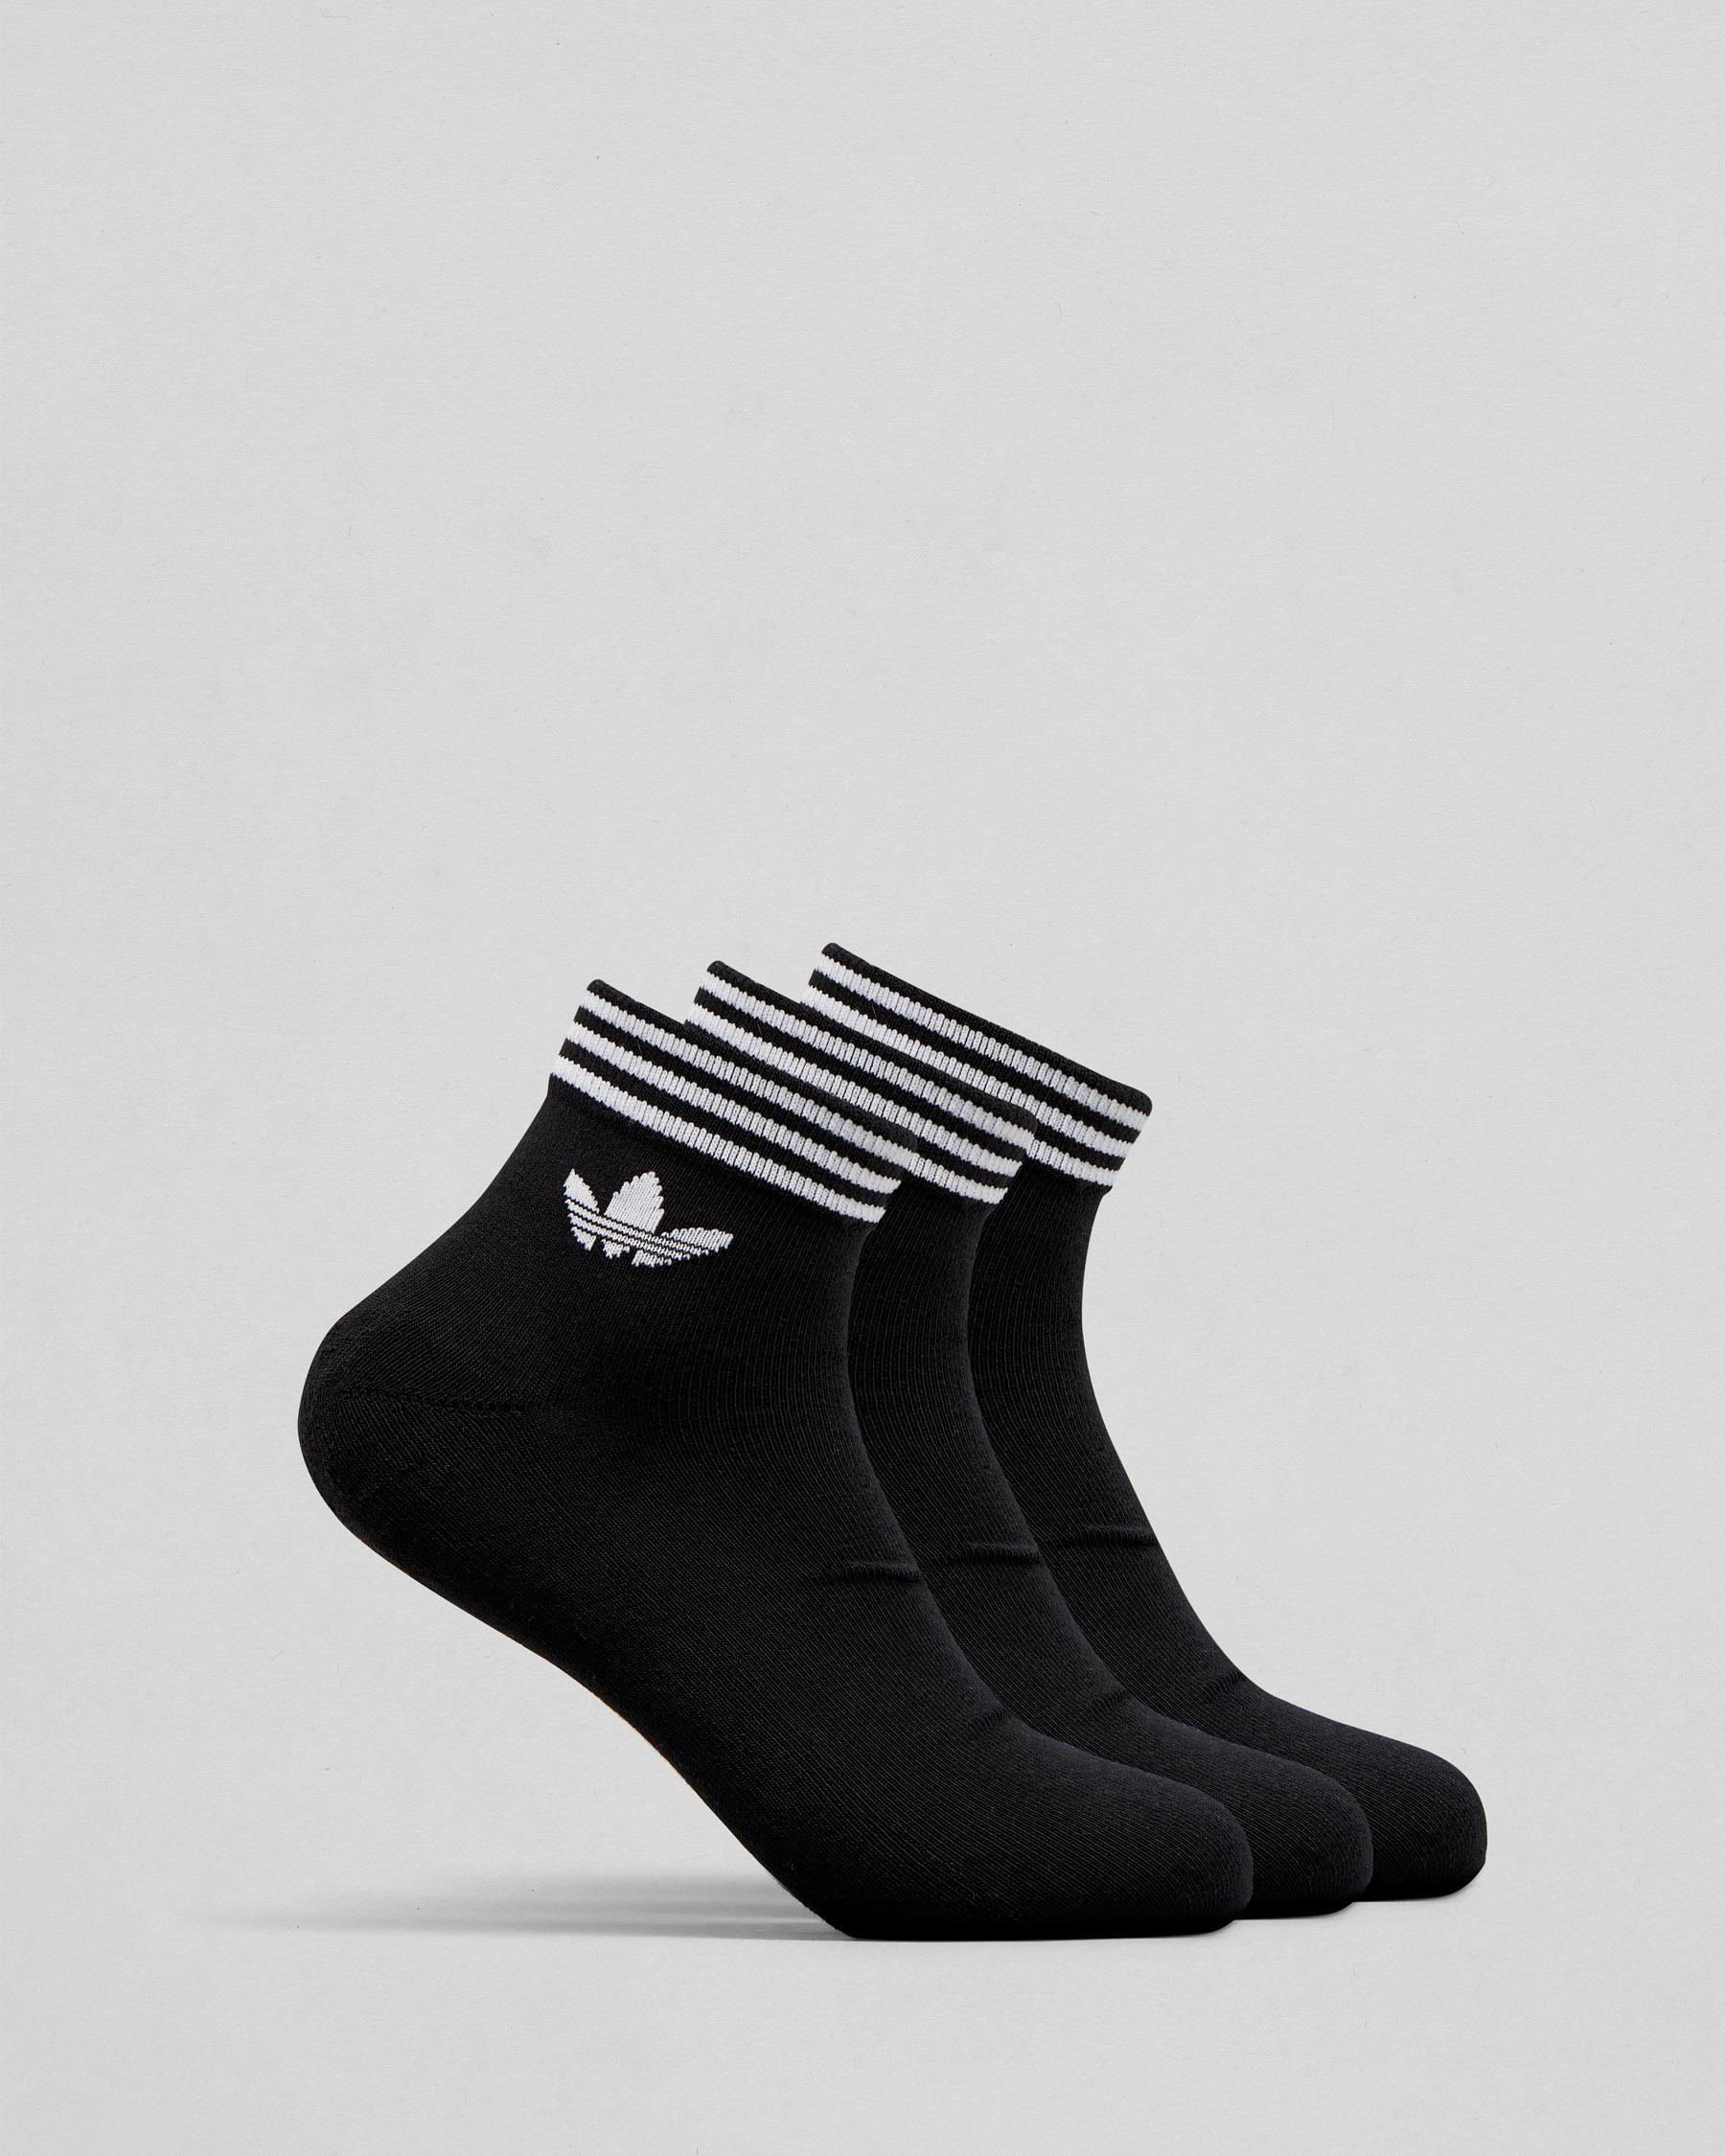 Adidas Trefoil Ankle Sock 3pk In Black/white - Fast Shipping & Easy ...